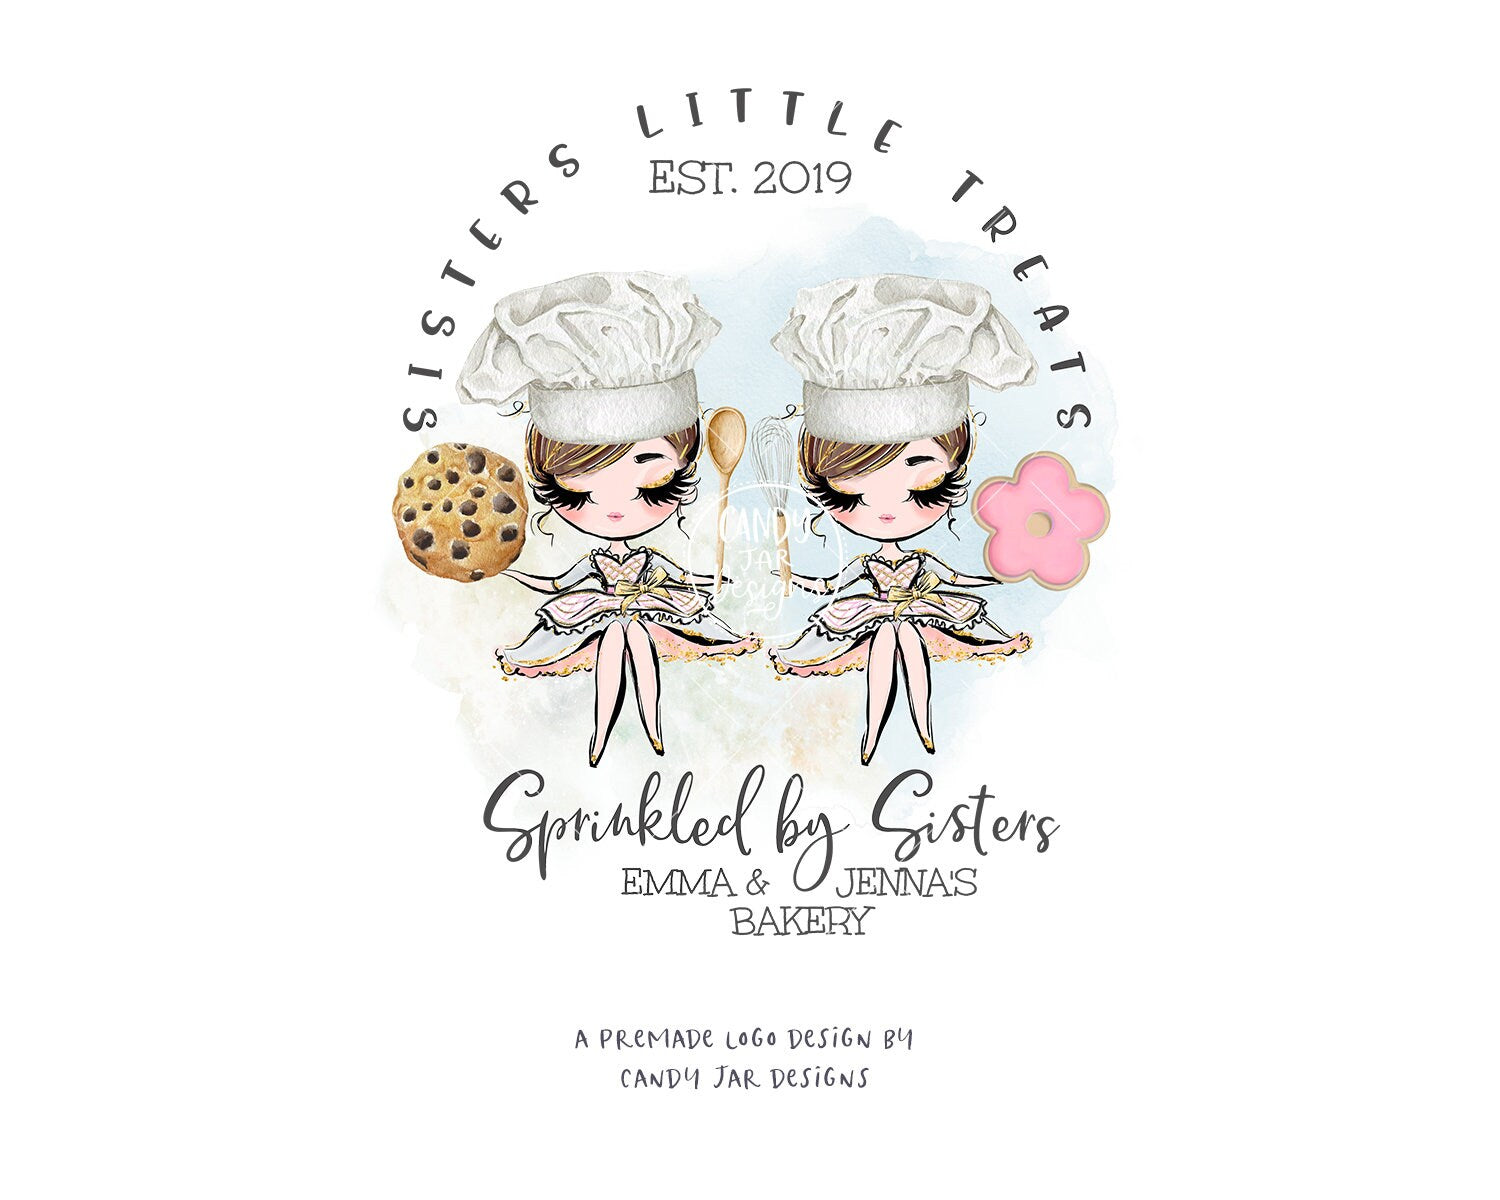 Bakery Friends Logo, Baking Besties, Candy, Sweets